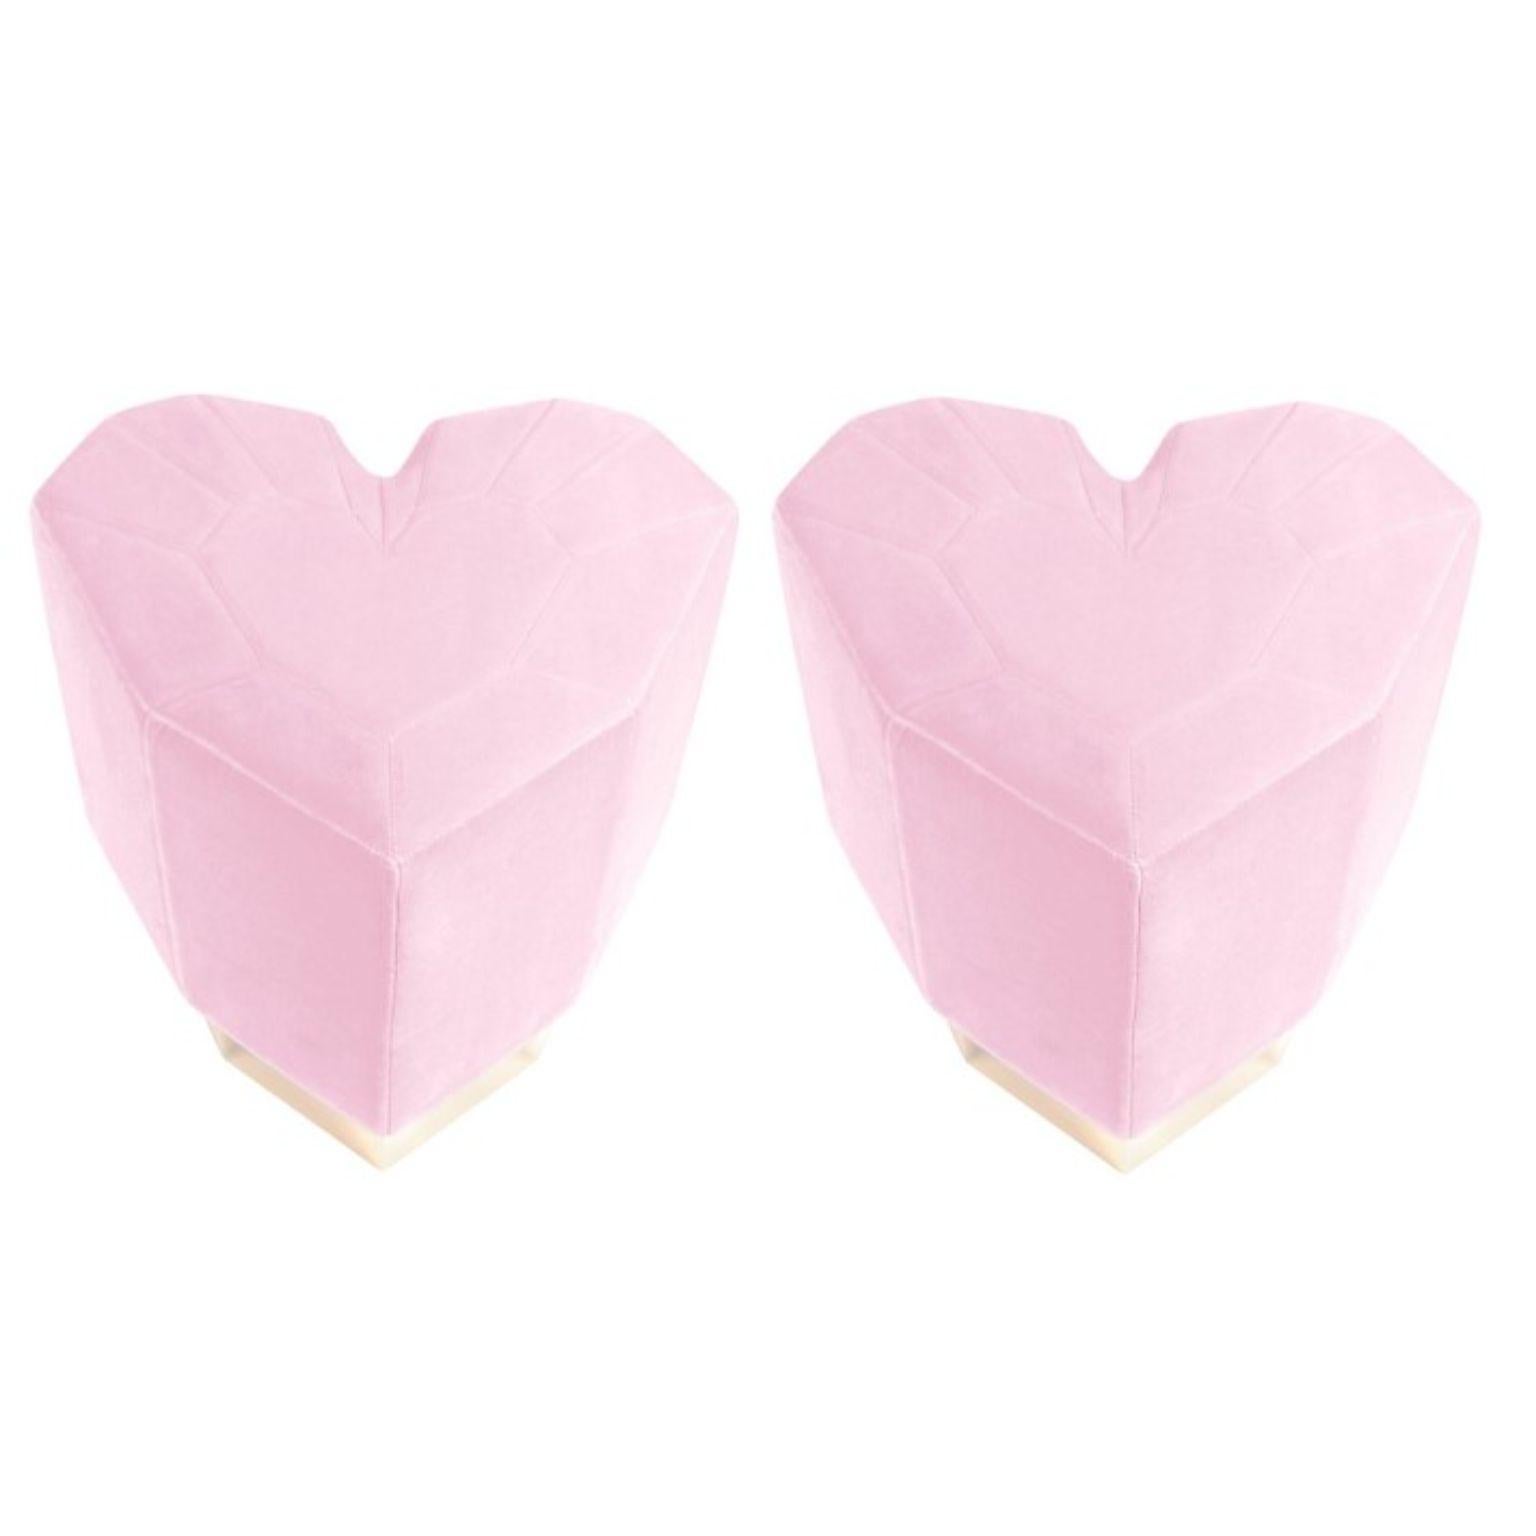 Ensemble de 2 tabourets en forme de coeur rose pâle par Royal Stranger
Dimensions : 46 x 49 x 43 cm
Différentes couleurs et finitions de rembourrage sont disponibles. Laiton, cuivre ou acier inoxydable en finition polie ou brossée.
MATERIAL :